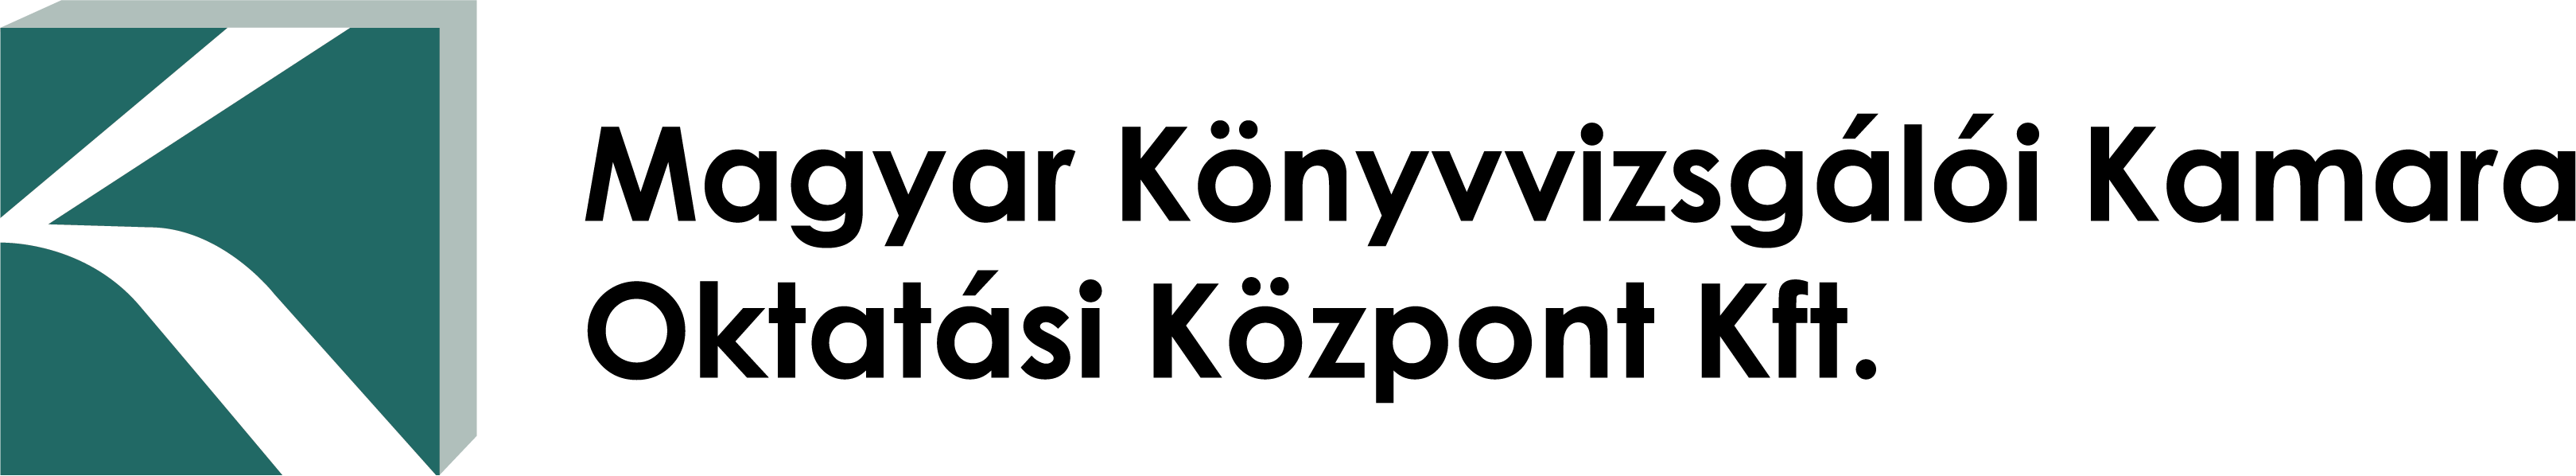 MKVOKK logo png